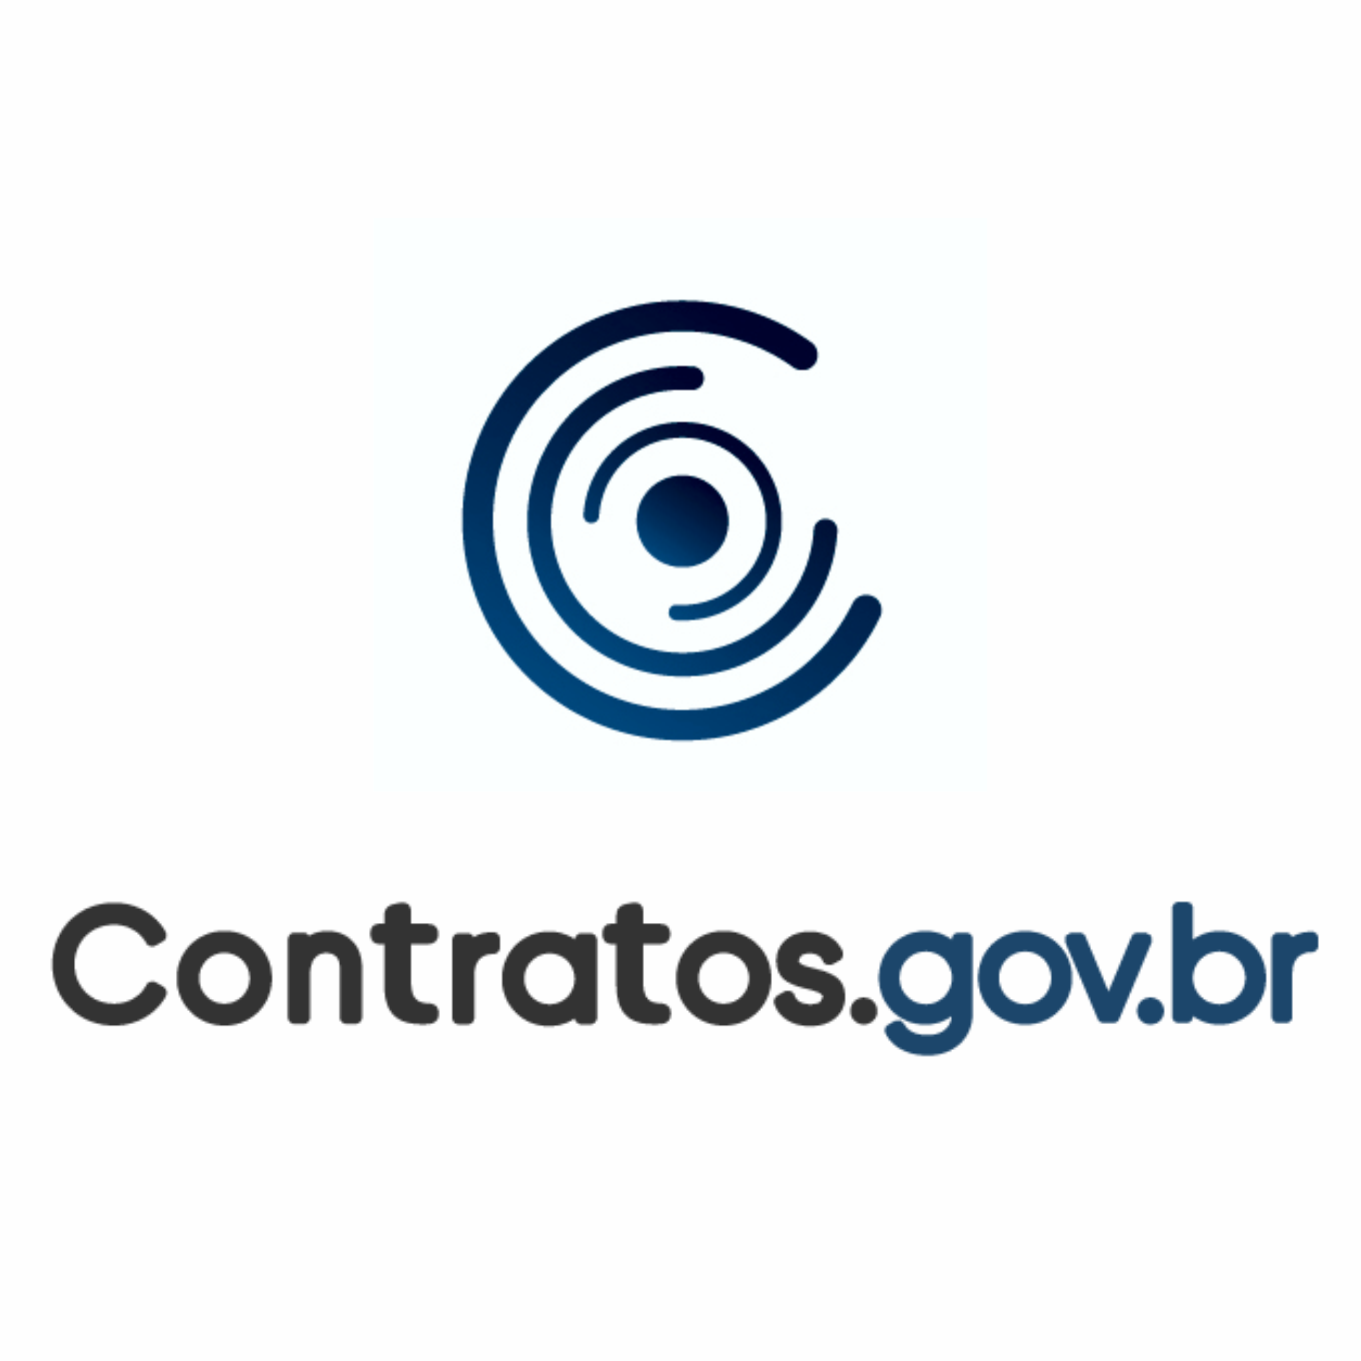 Treinamento Contratos.gov.br - Gestão Contratual - IFES